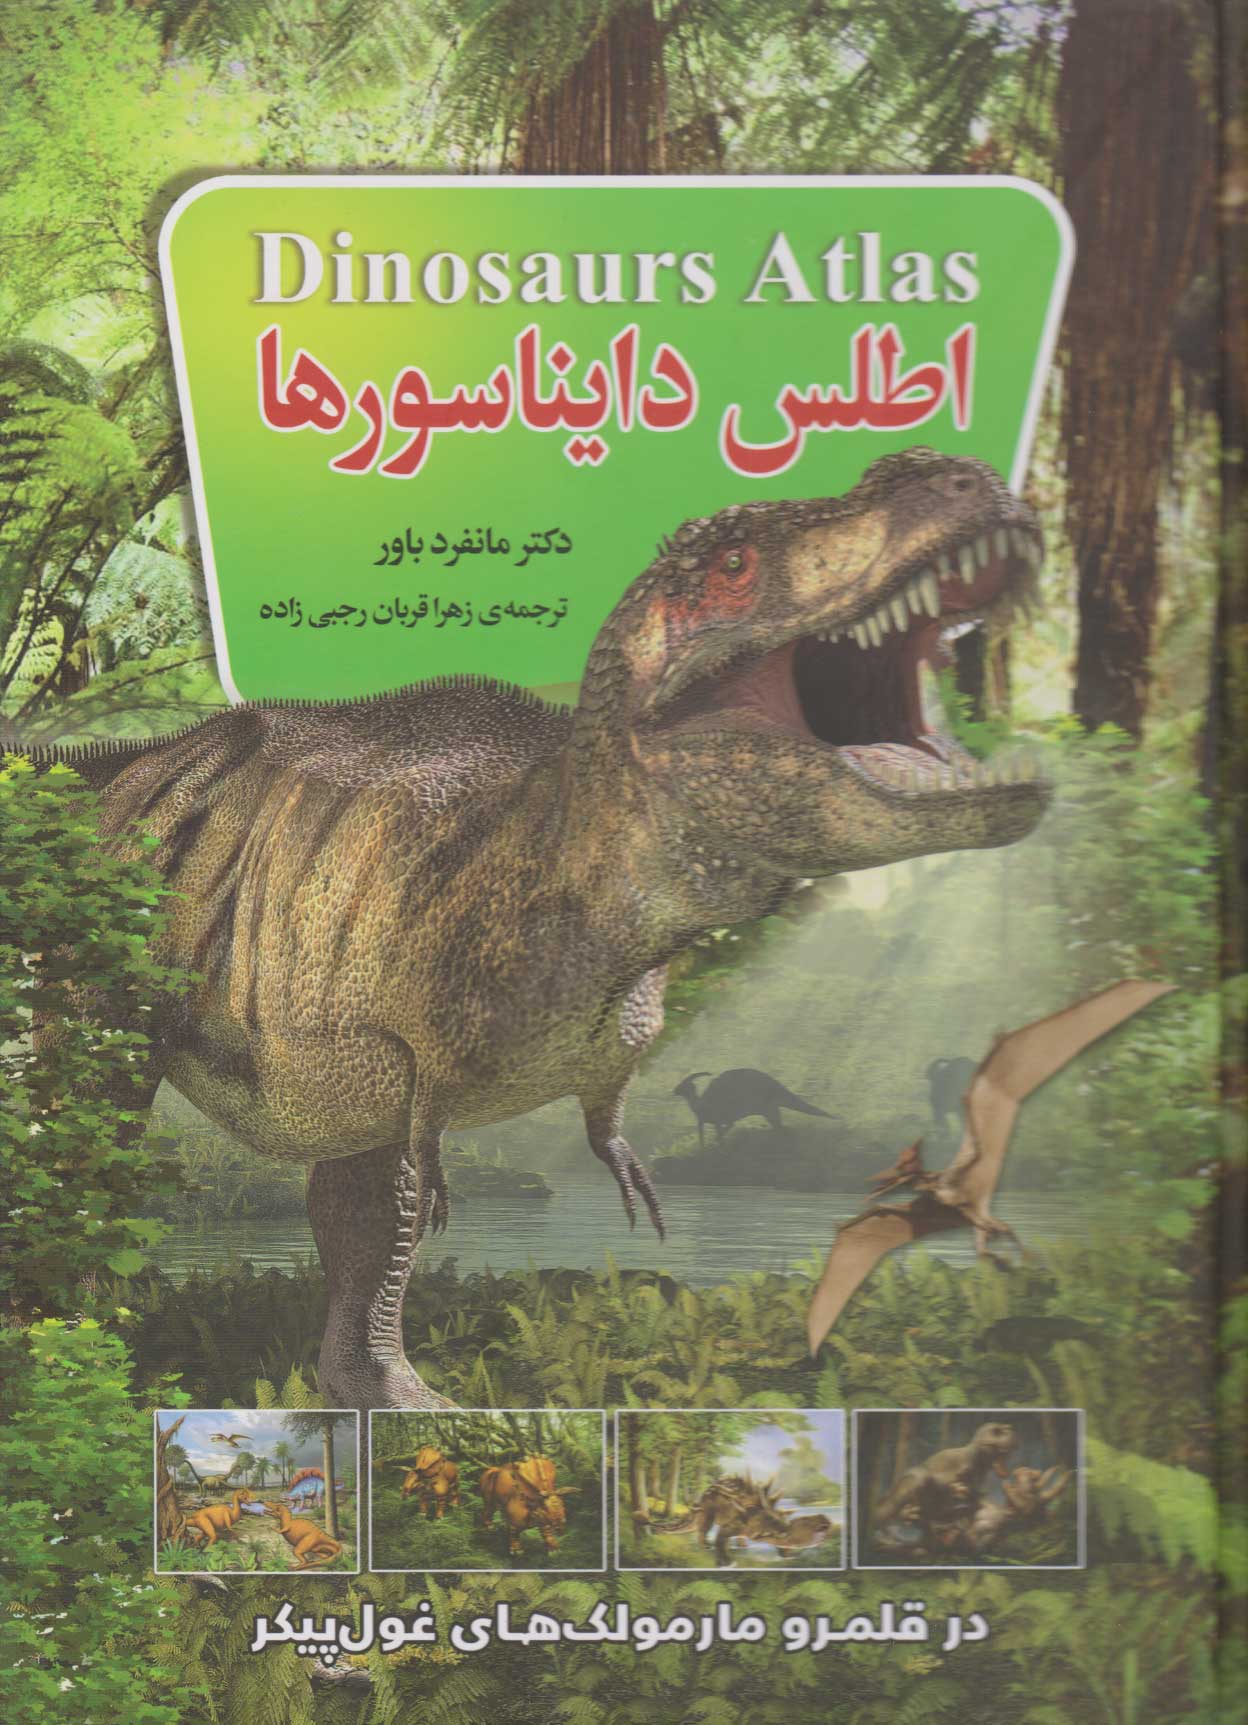  کتاب اطلس دایناسورها